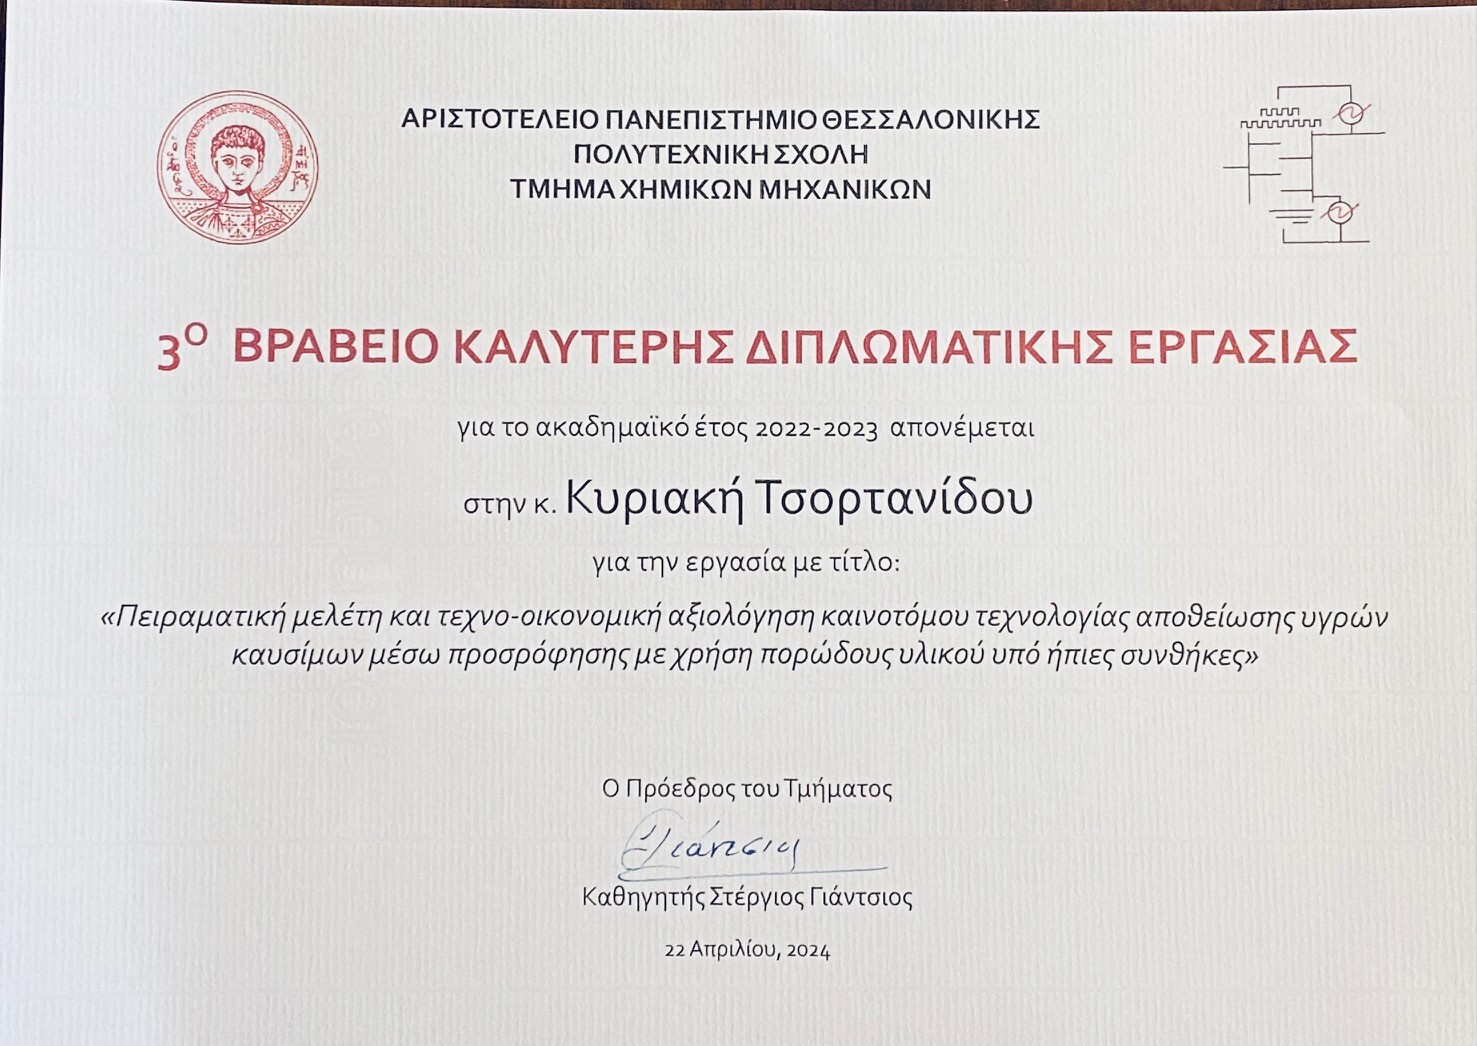 Βραβείο καλύτερης διπλωματικής εργασίας, Τμ. Χημικών Μηχ. ΑΠΘ (2022-23)